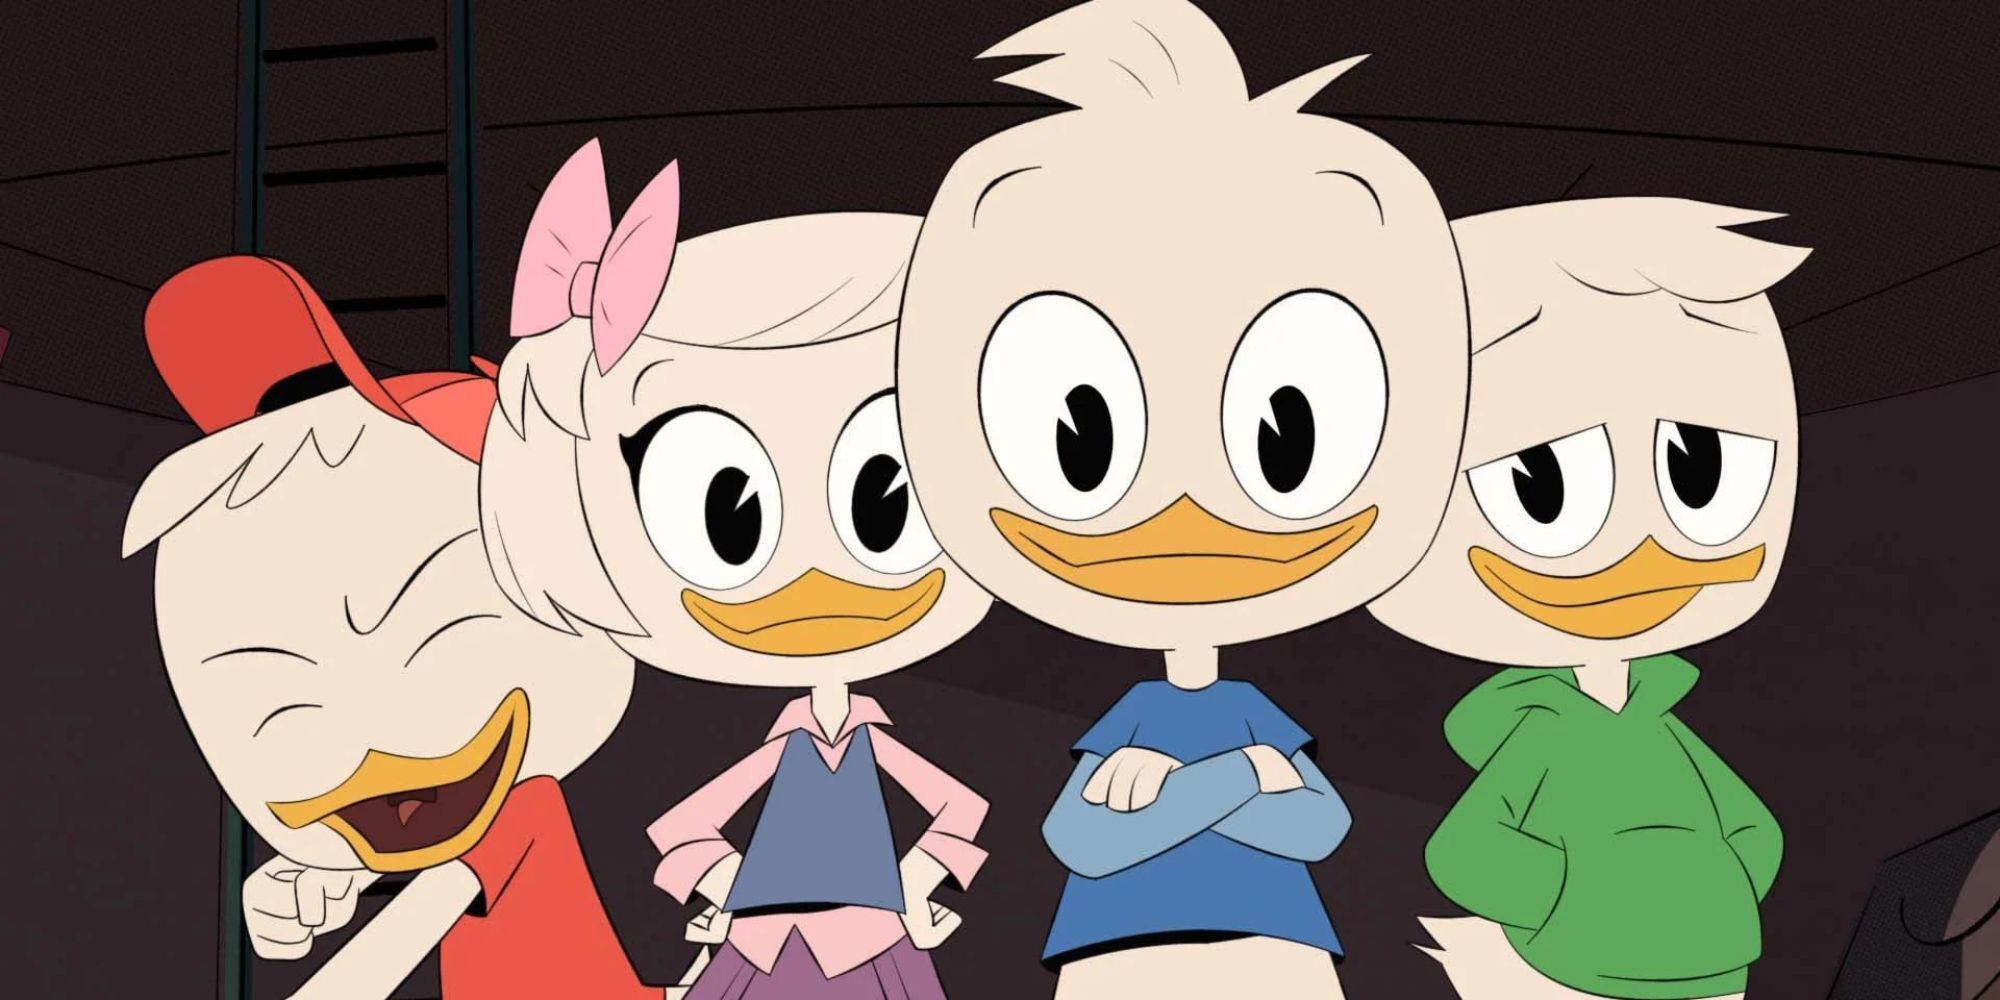 ‘DuckTales’ (1987-1990) and ‘DuckTales’ (2017-2021)